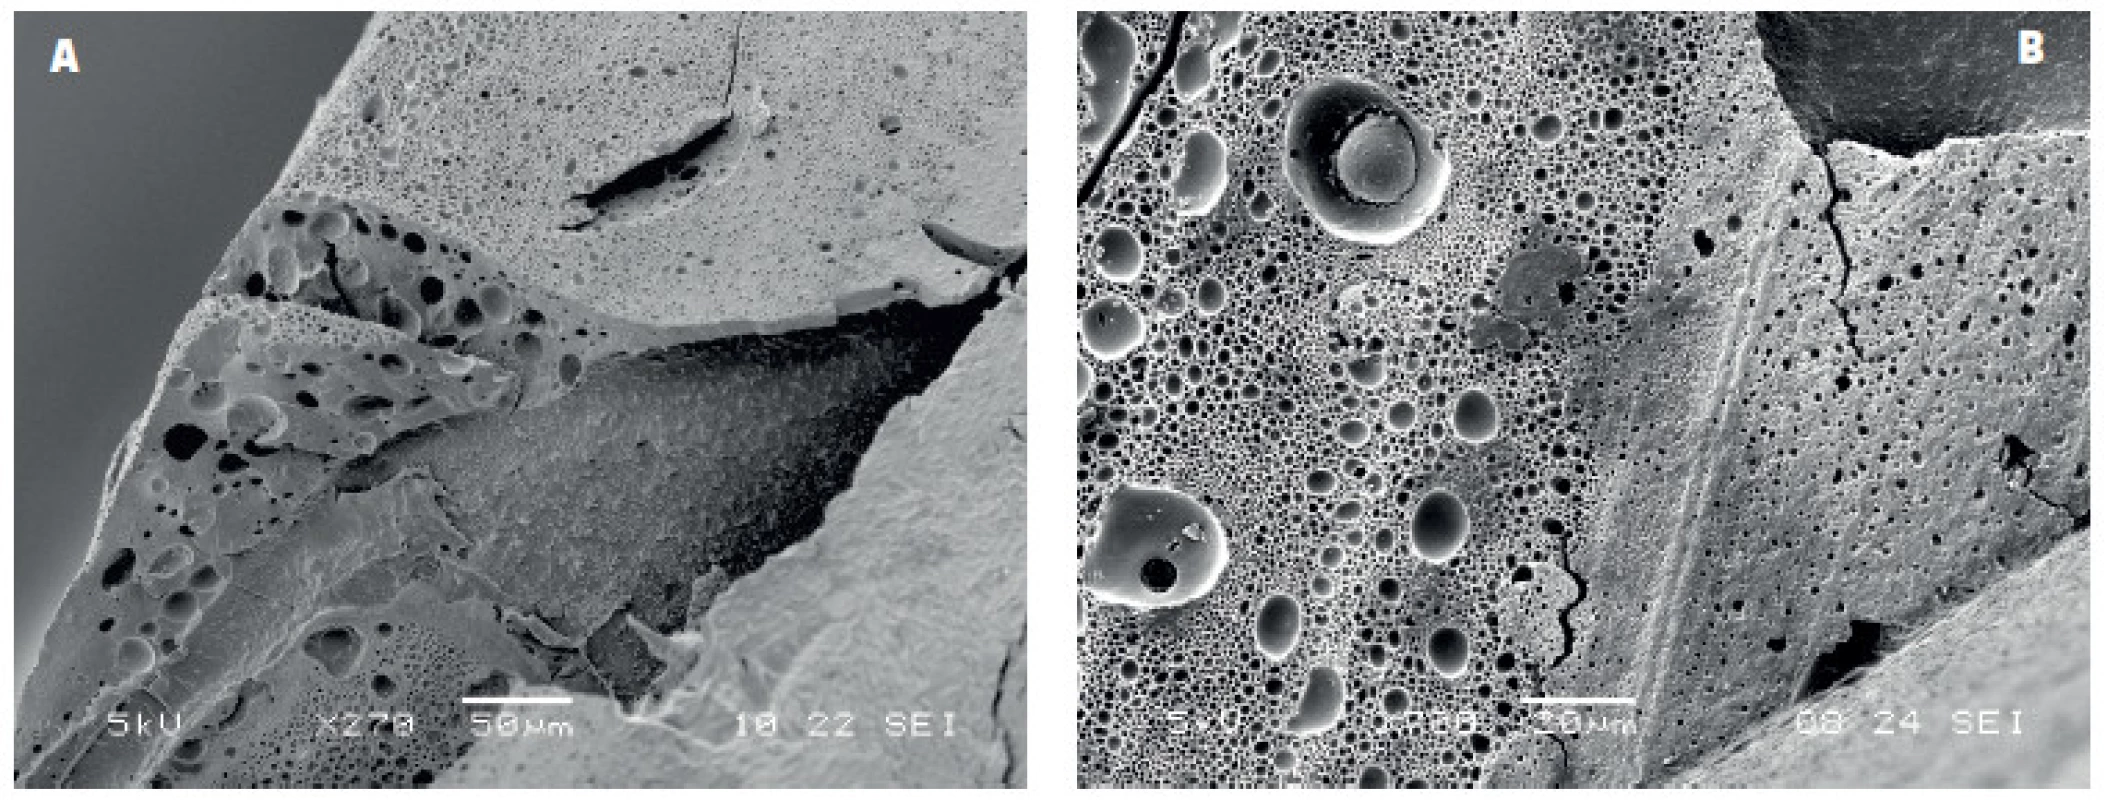 Spodní část kompozitní výplně bondované adhezivem IBO po odstranění skloviny a dentinu demineralizací a deproteinizací pomocí HCl a NaOCl: A) rozsáhlé oblasti porozity ve vrstvě adheziva na spodině výplně v kontaktu s dentinem, B) detail stěny kompozitní výplně s patrnými bublinkami různé velikosti, zvětšení 270 a 700x, SEM